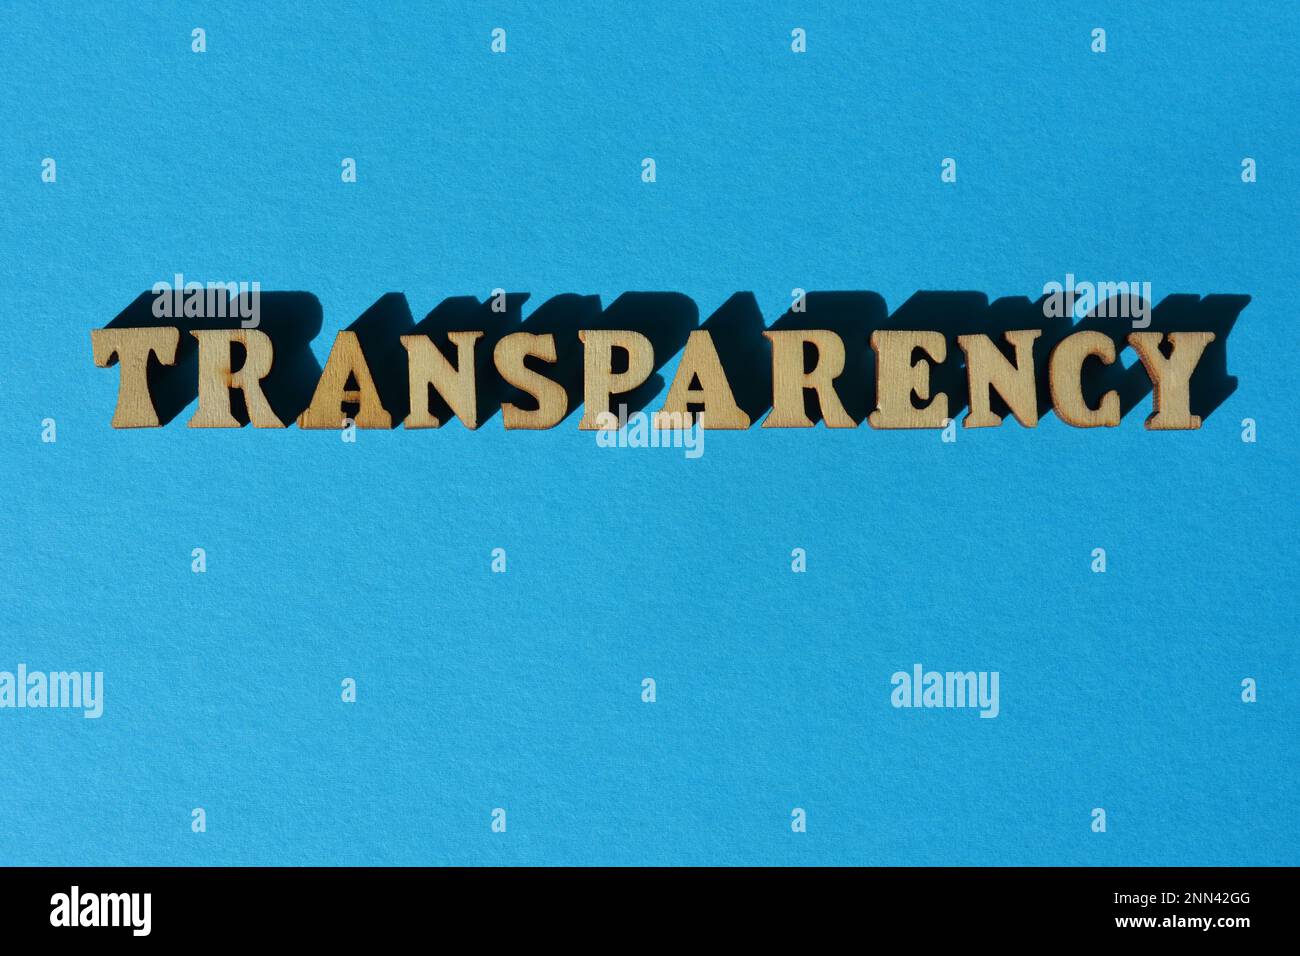 Transparenz, Wort in hölzernen Buchstaben isoliert auf blauem Hintergrund Stockfoto